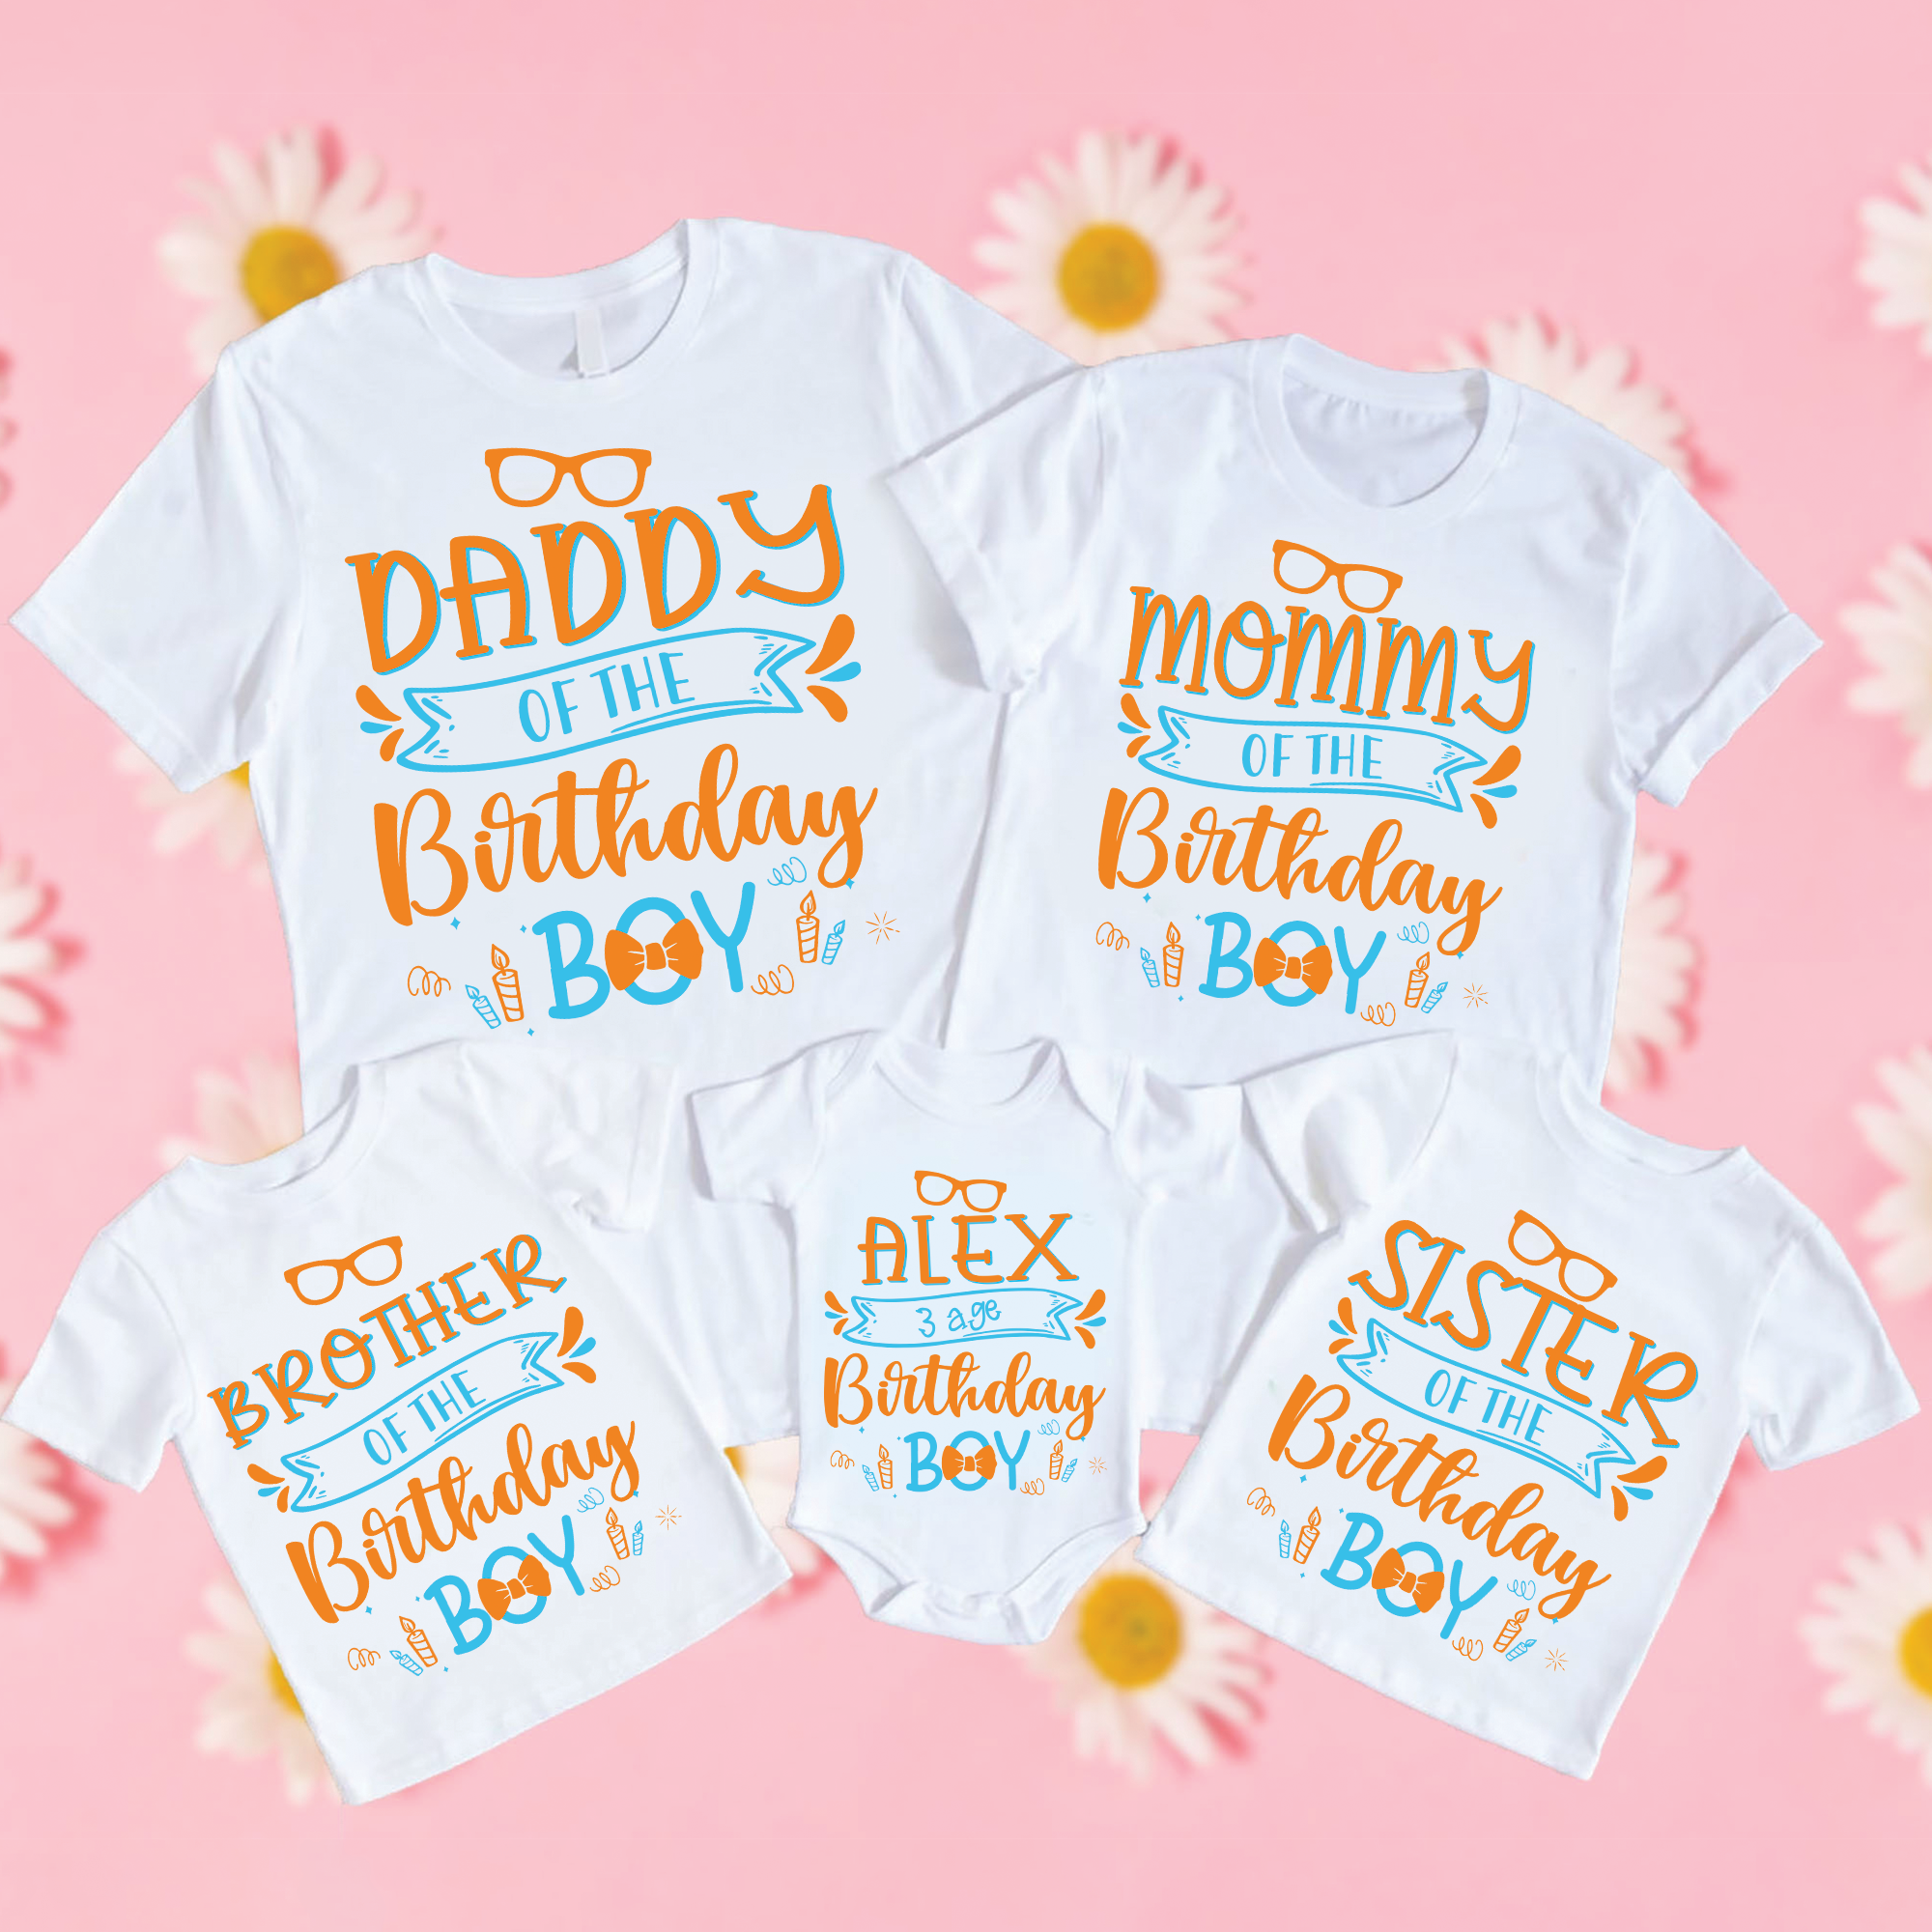 Personalized Blippi Birthday Shirts, Custom Family Blippi shirts, Blippi birthday Theme Shirts, Matching Family Party Shirts